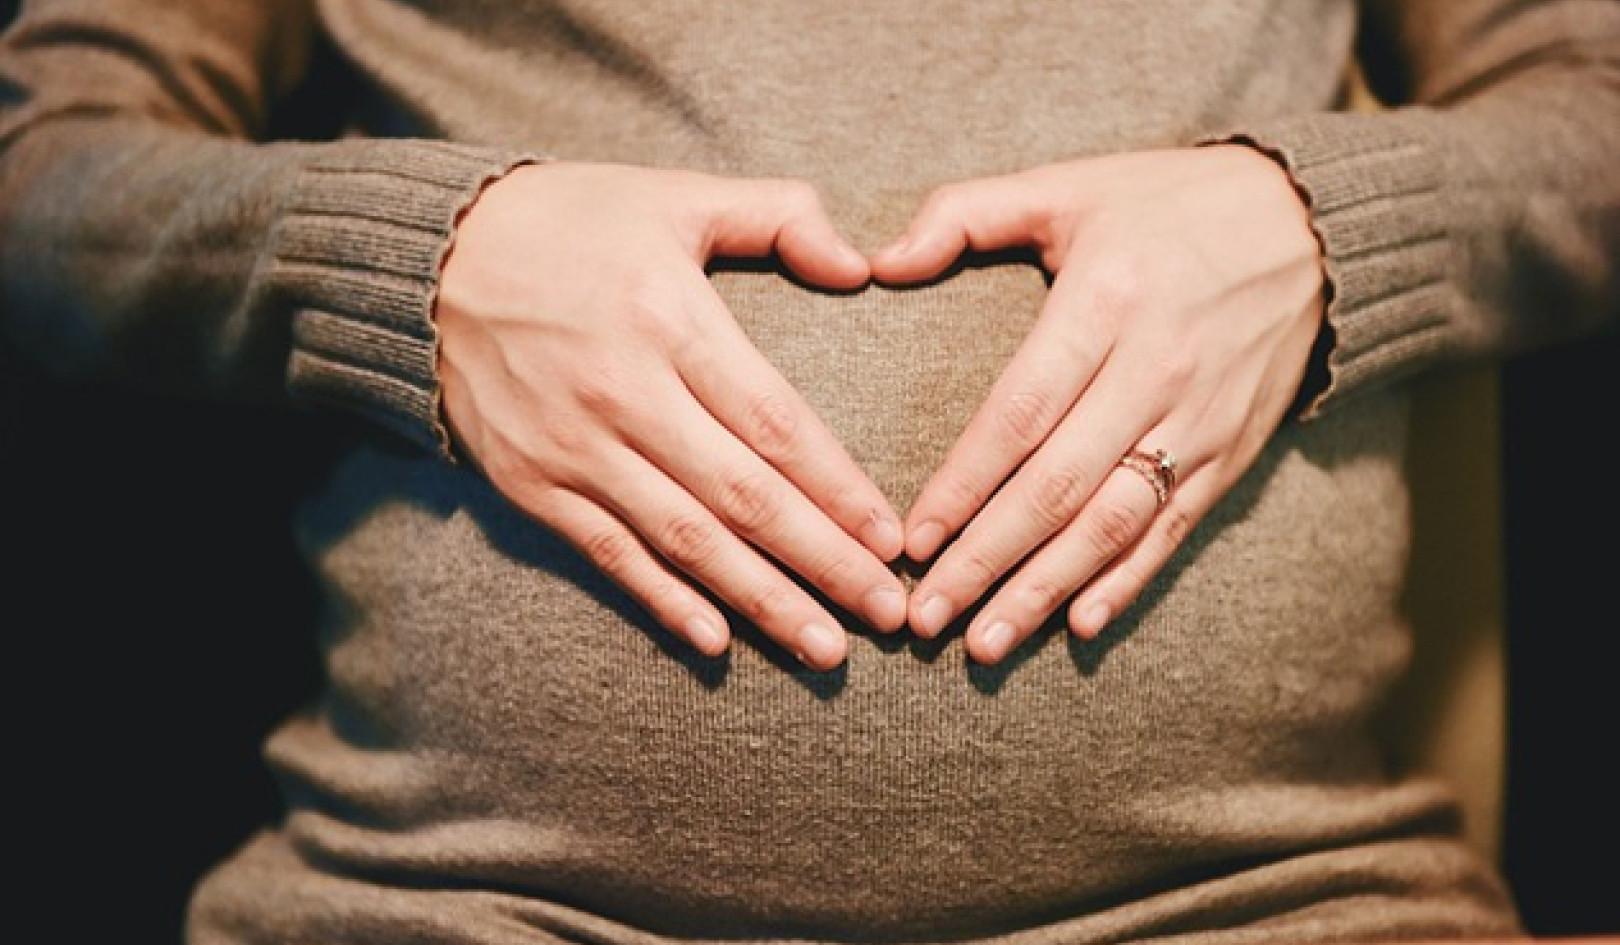 임신을 돕기 위해: 여성의 힘과 연결하기